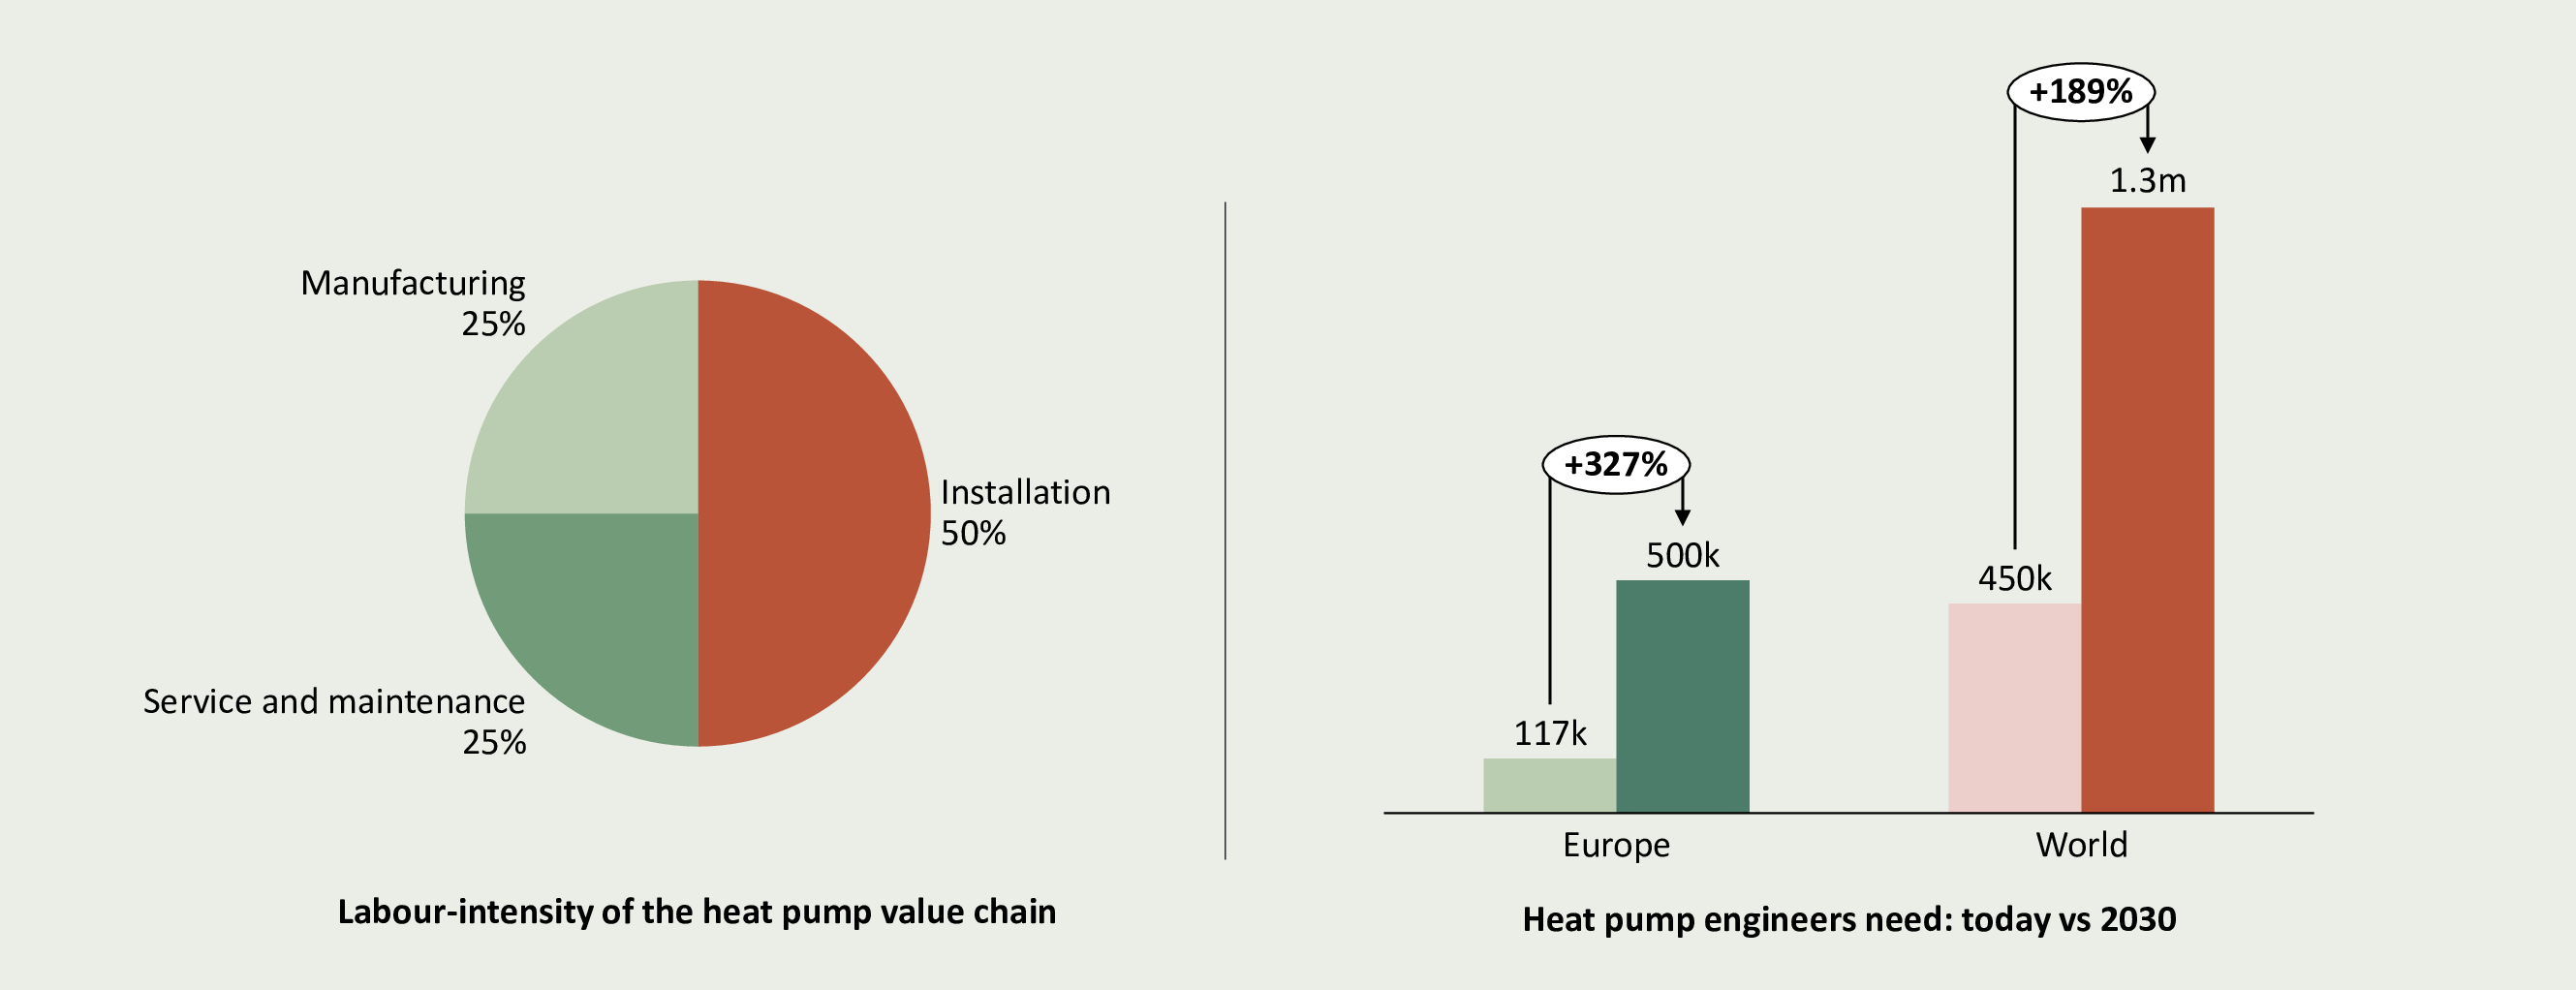 #31 - 850,000 heat pump engineers wanted